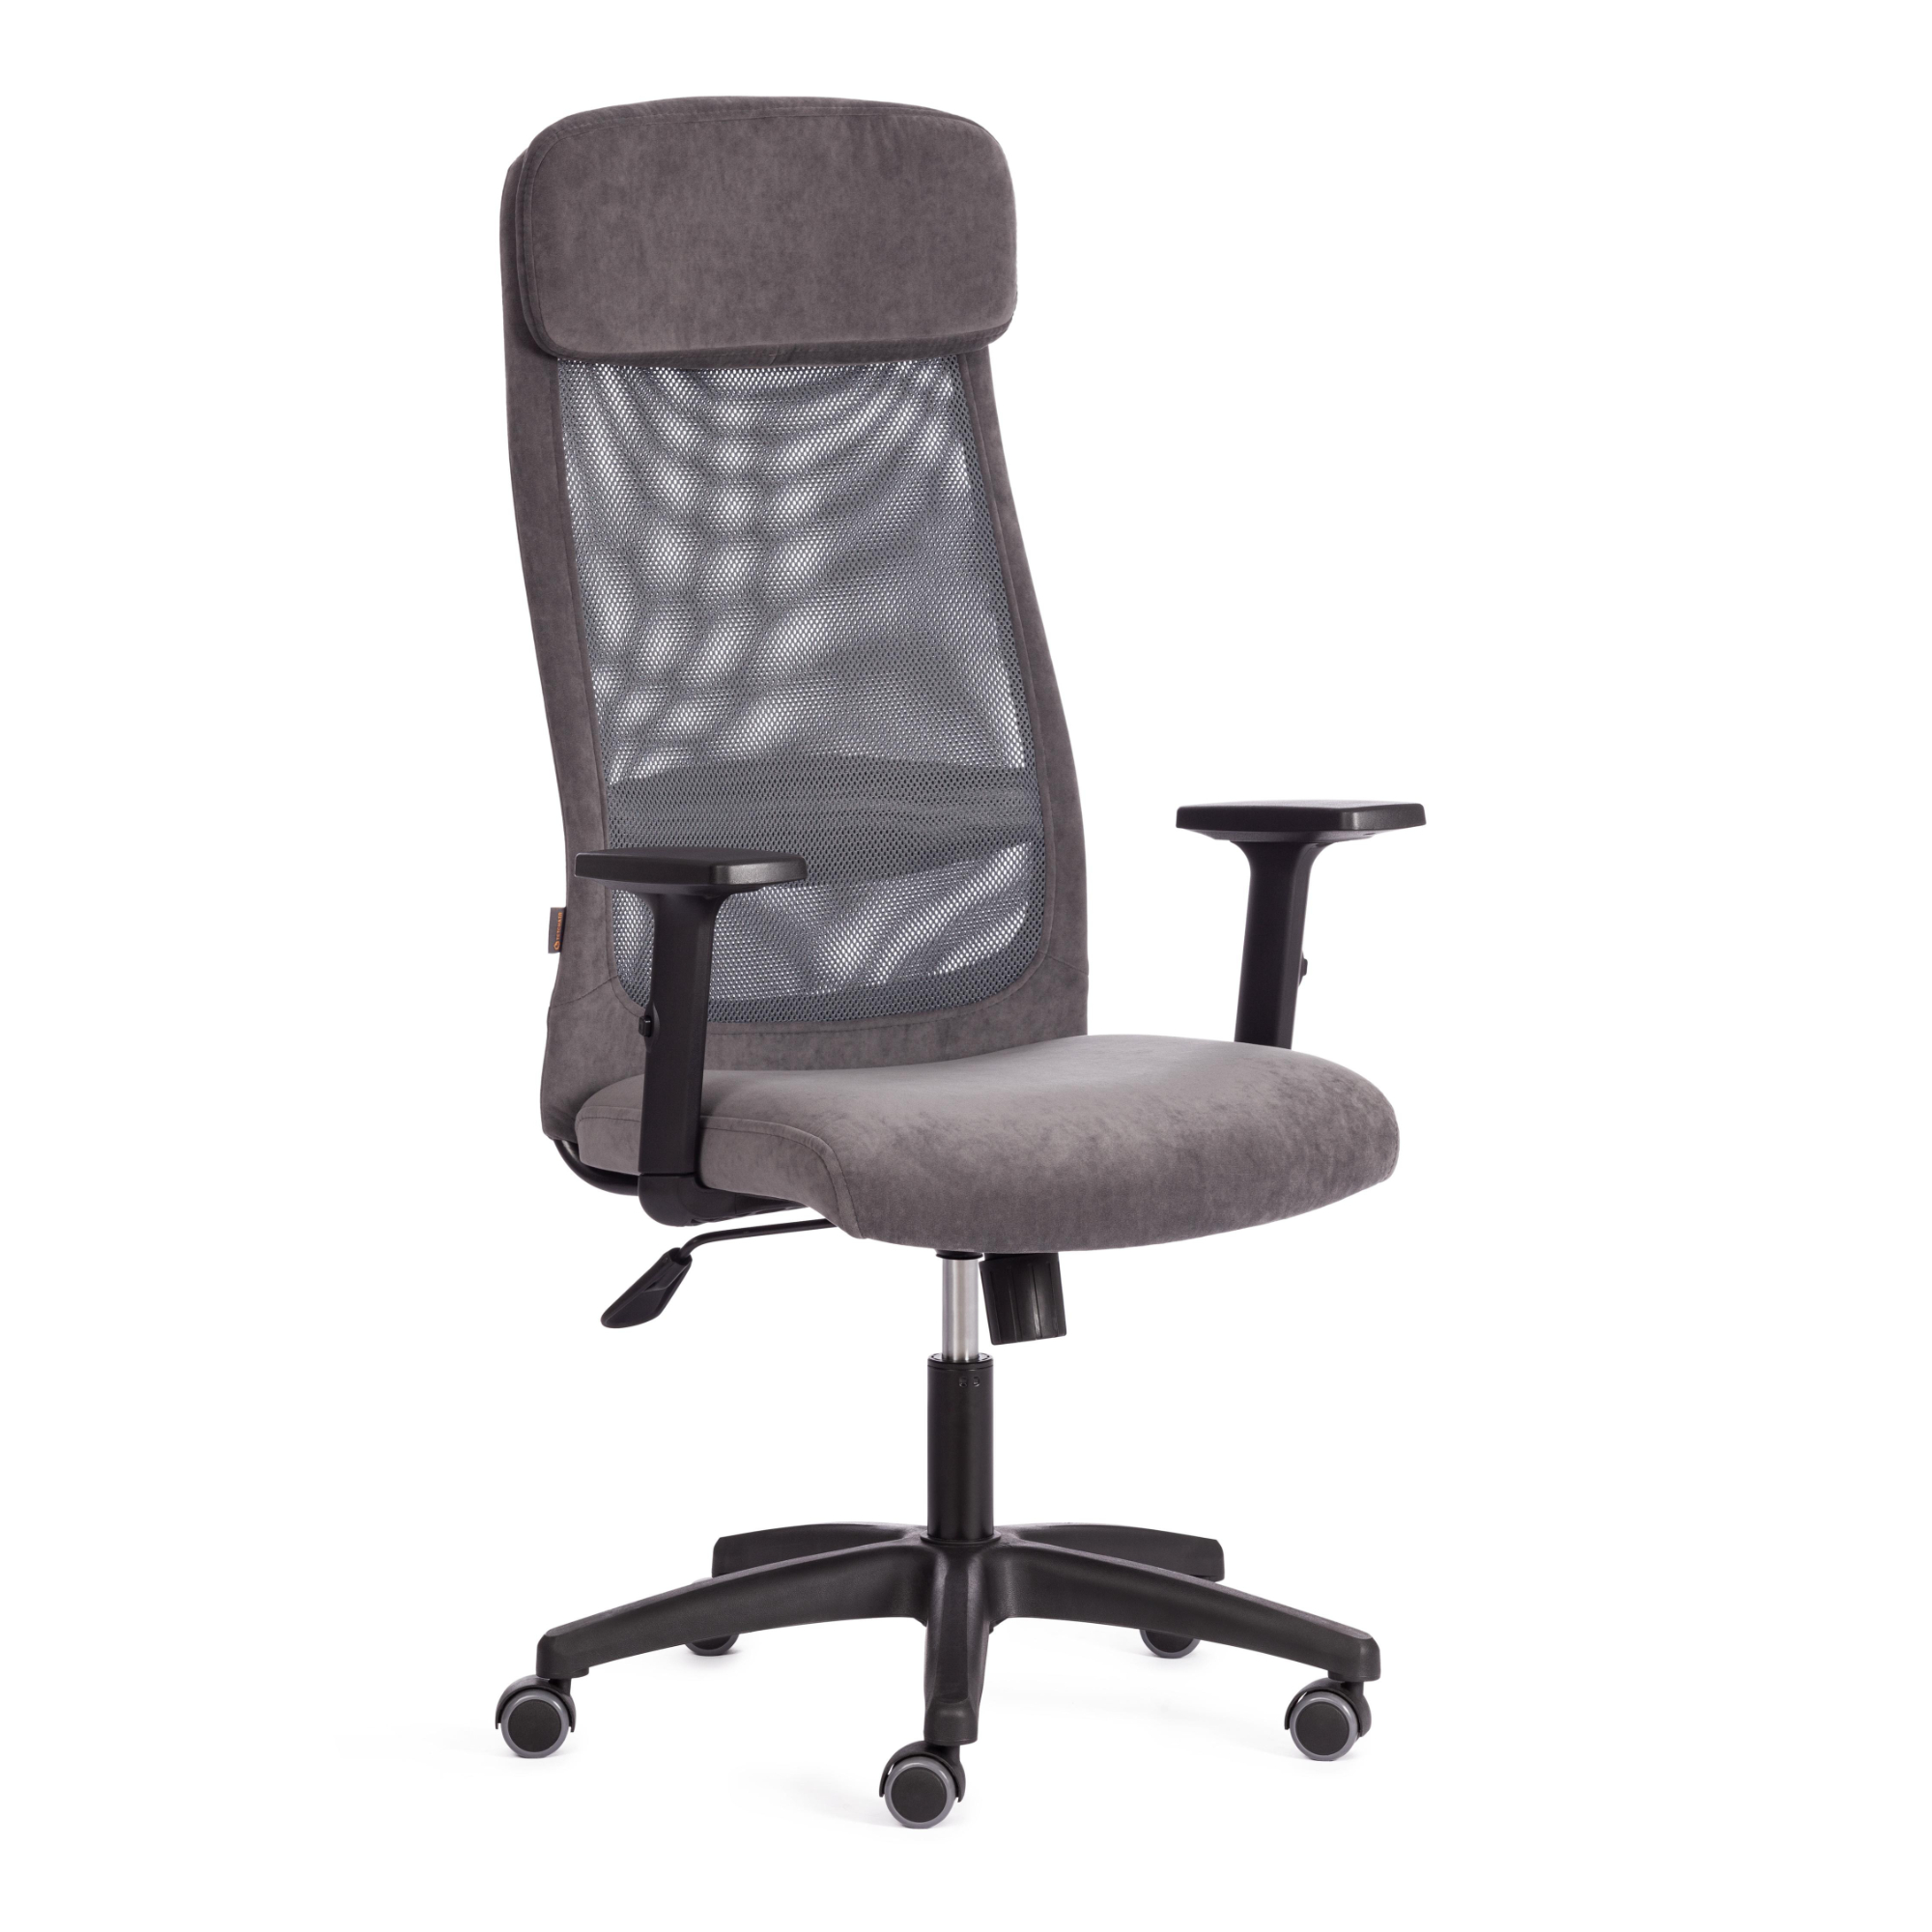 Кресло ТС Profit PLT 29/W-12 флок серое кресло руководителя inter серый флок иск кожа сетка